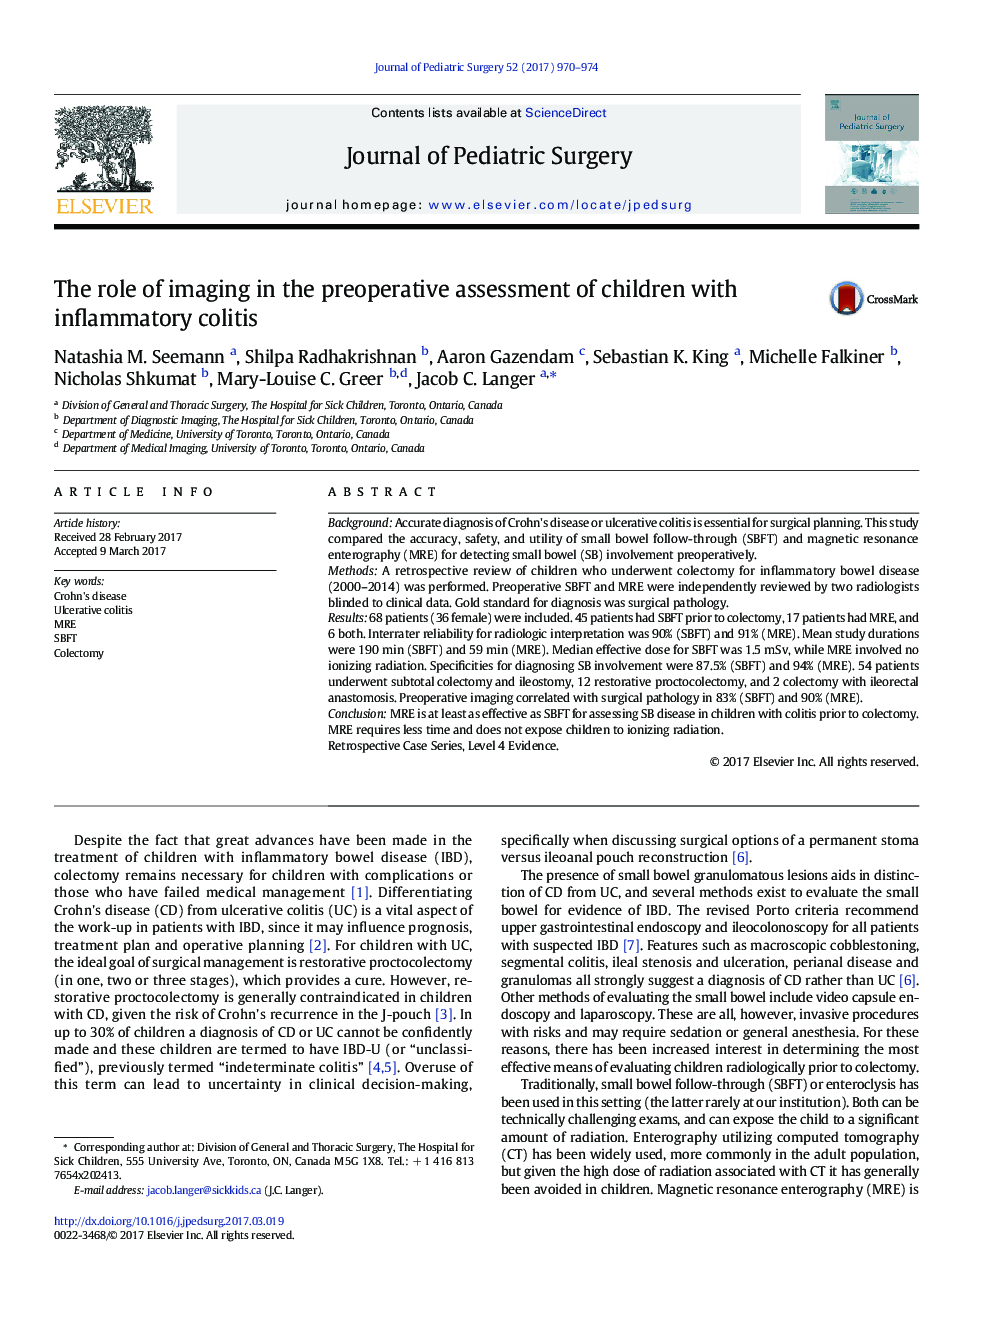 مقاله بالینی. نقش تصویربرداری در ارزیابی قبل از عمل جراحی کودکان مبتلا به کولیت التهابی 